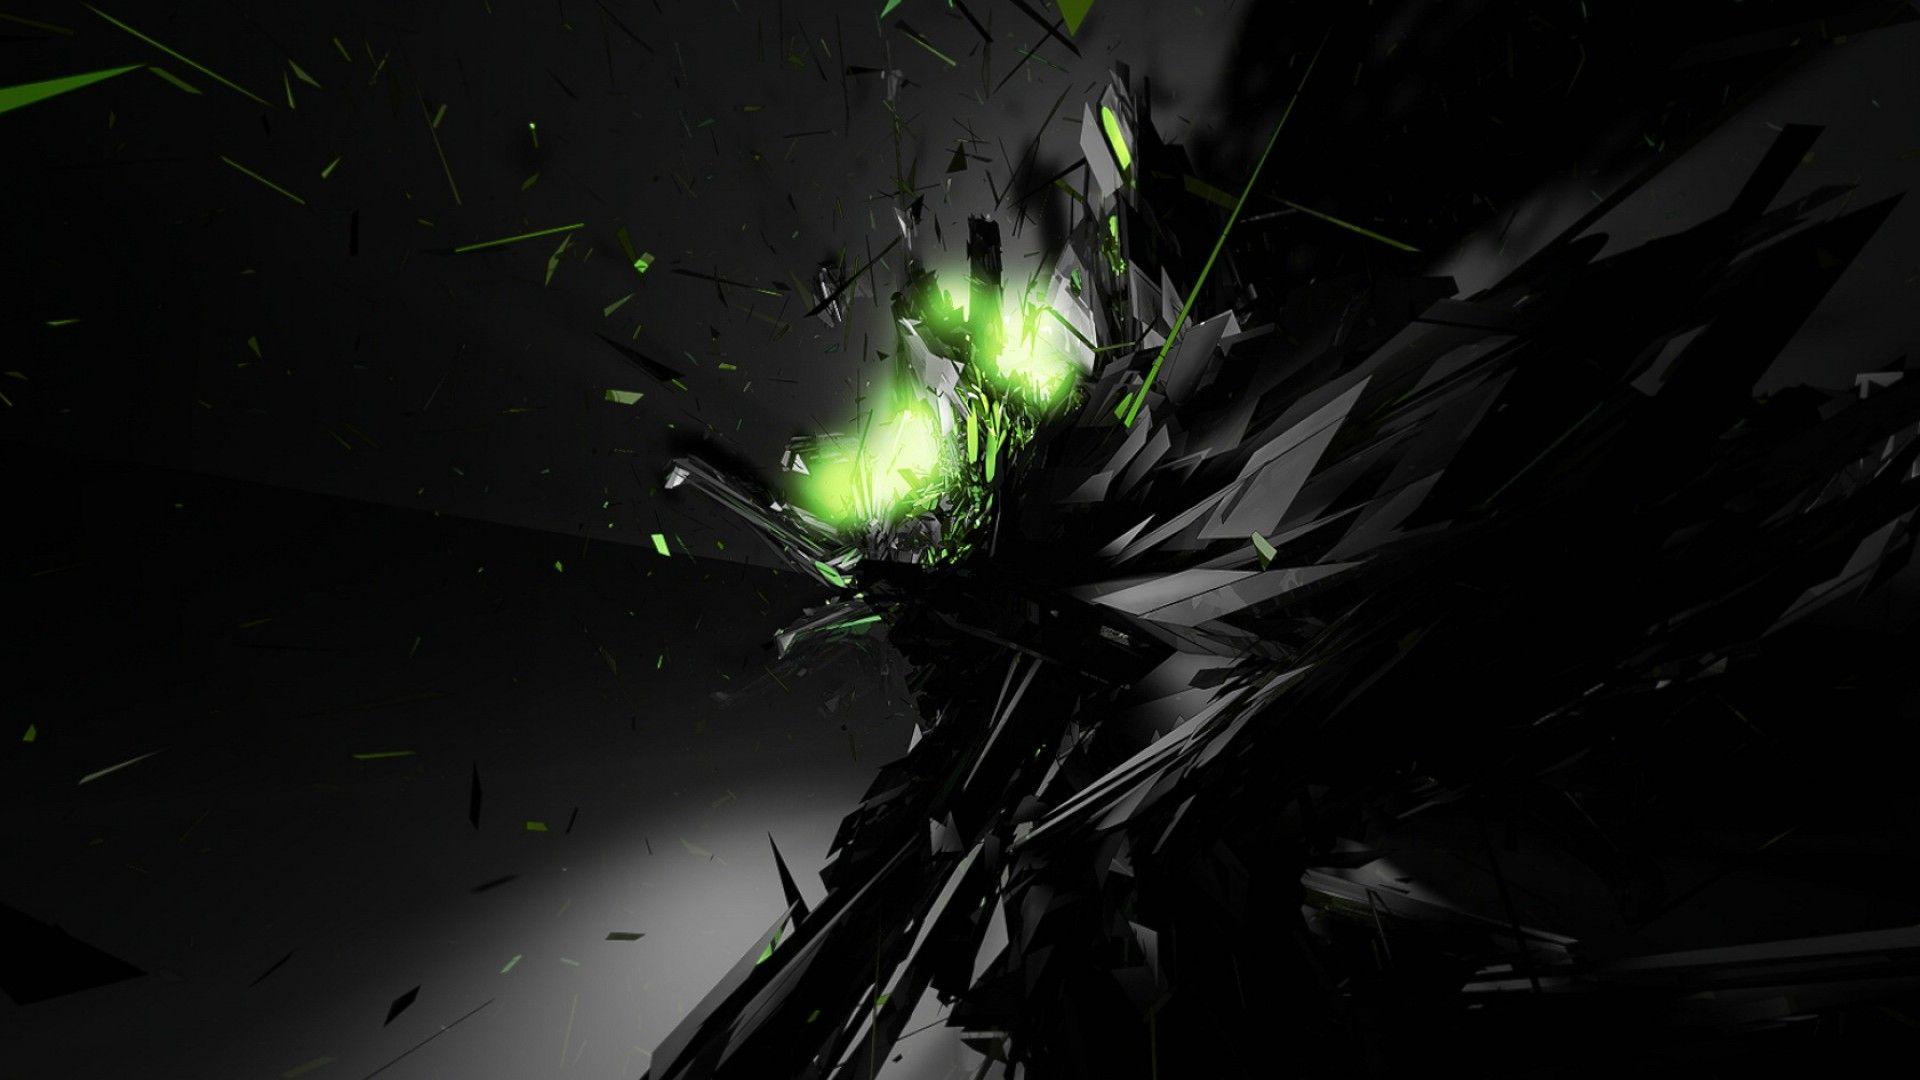 Black Abstract Green Glow Desktop Wallpaper. He is soooo